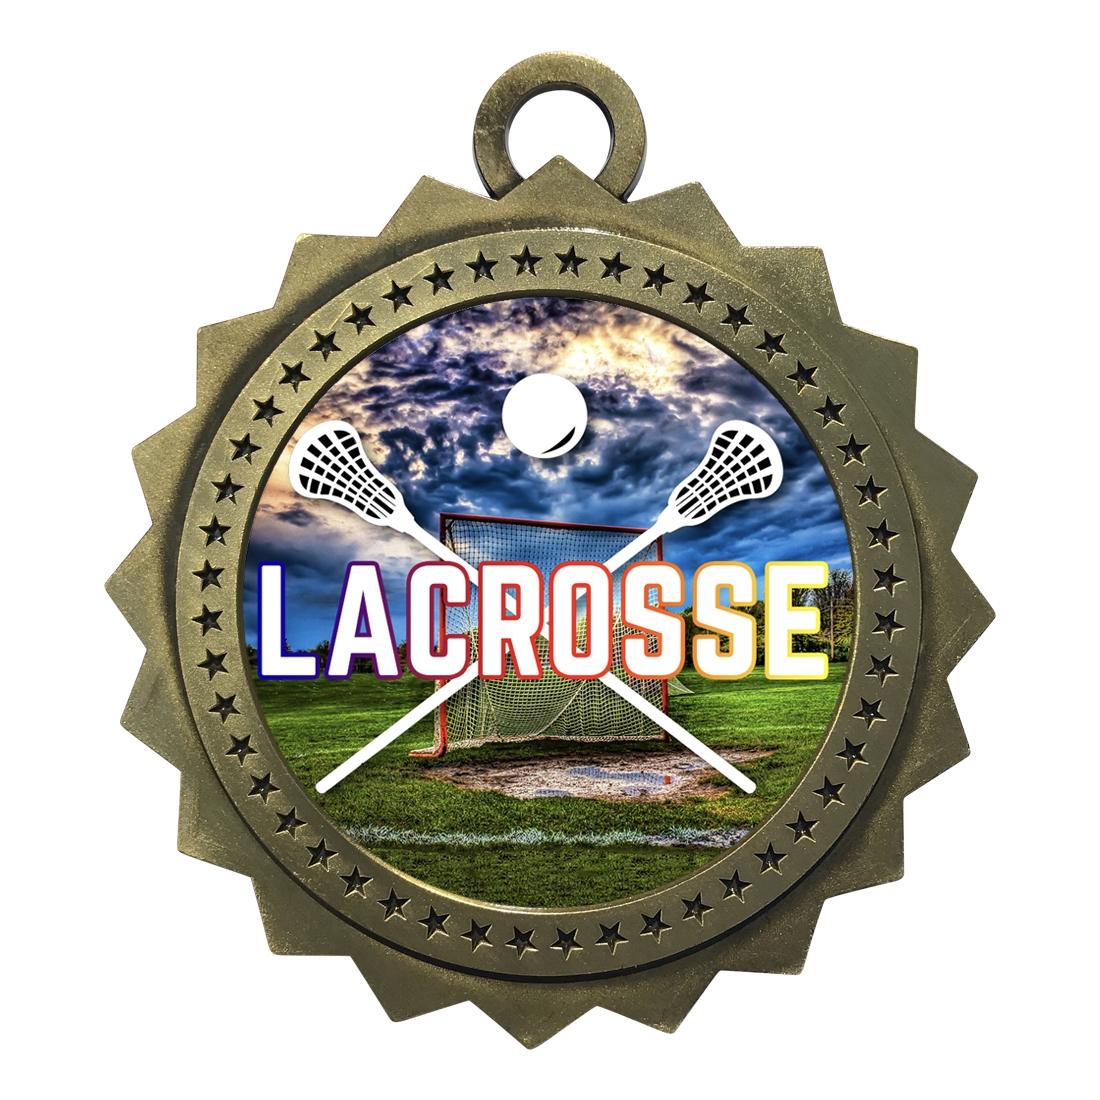 3" Lacrosse Medal